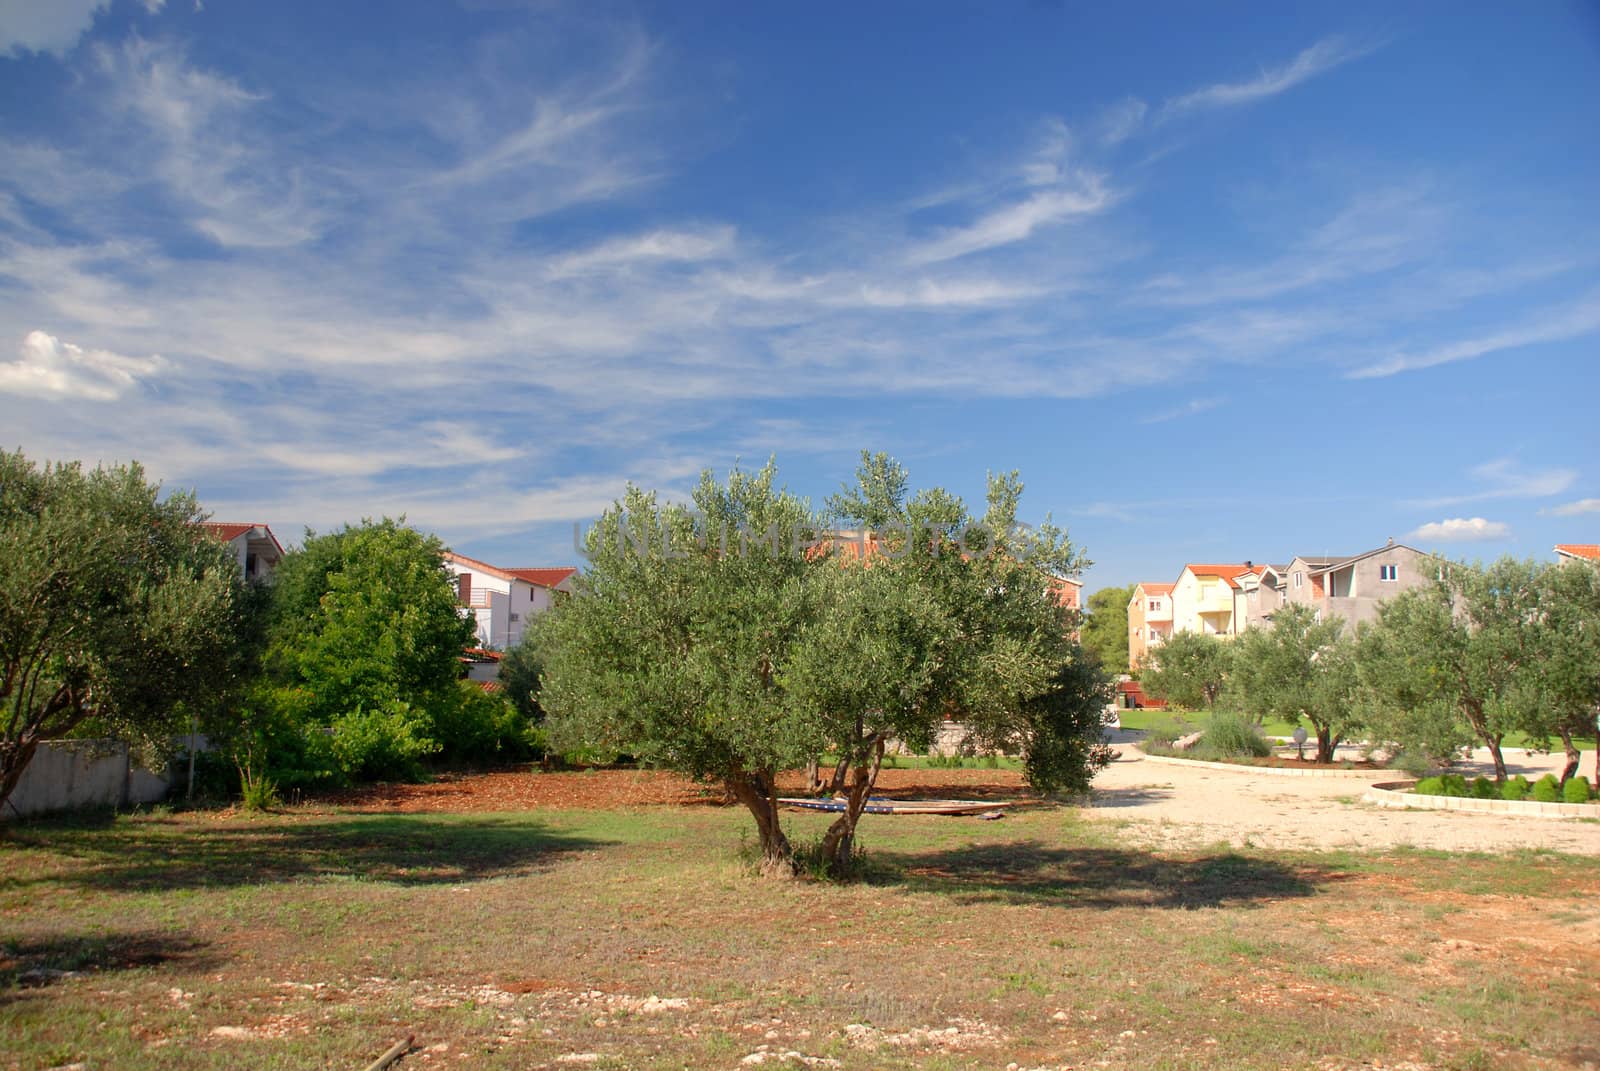 The olive tree groves. by wojciechkozlowski